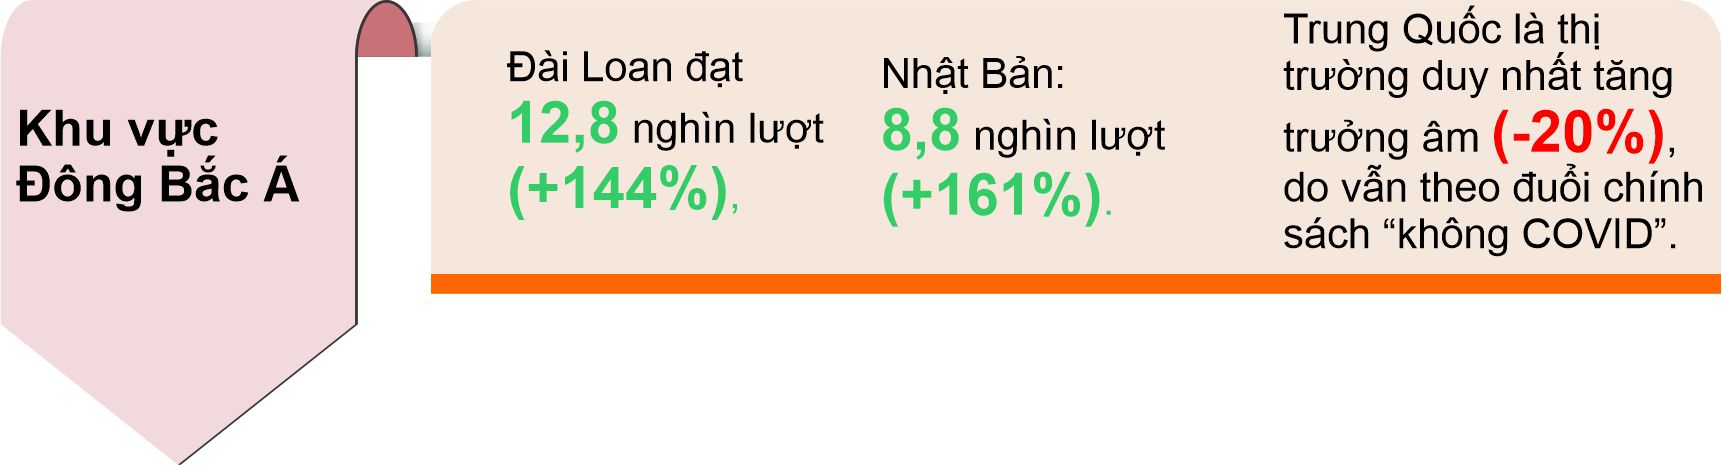 4 tháng đầu năm khách quốc tế đến Việt Nam tăng 284,7% so với cùng kỳ - Ảnh 3.